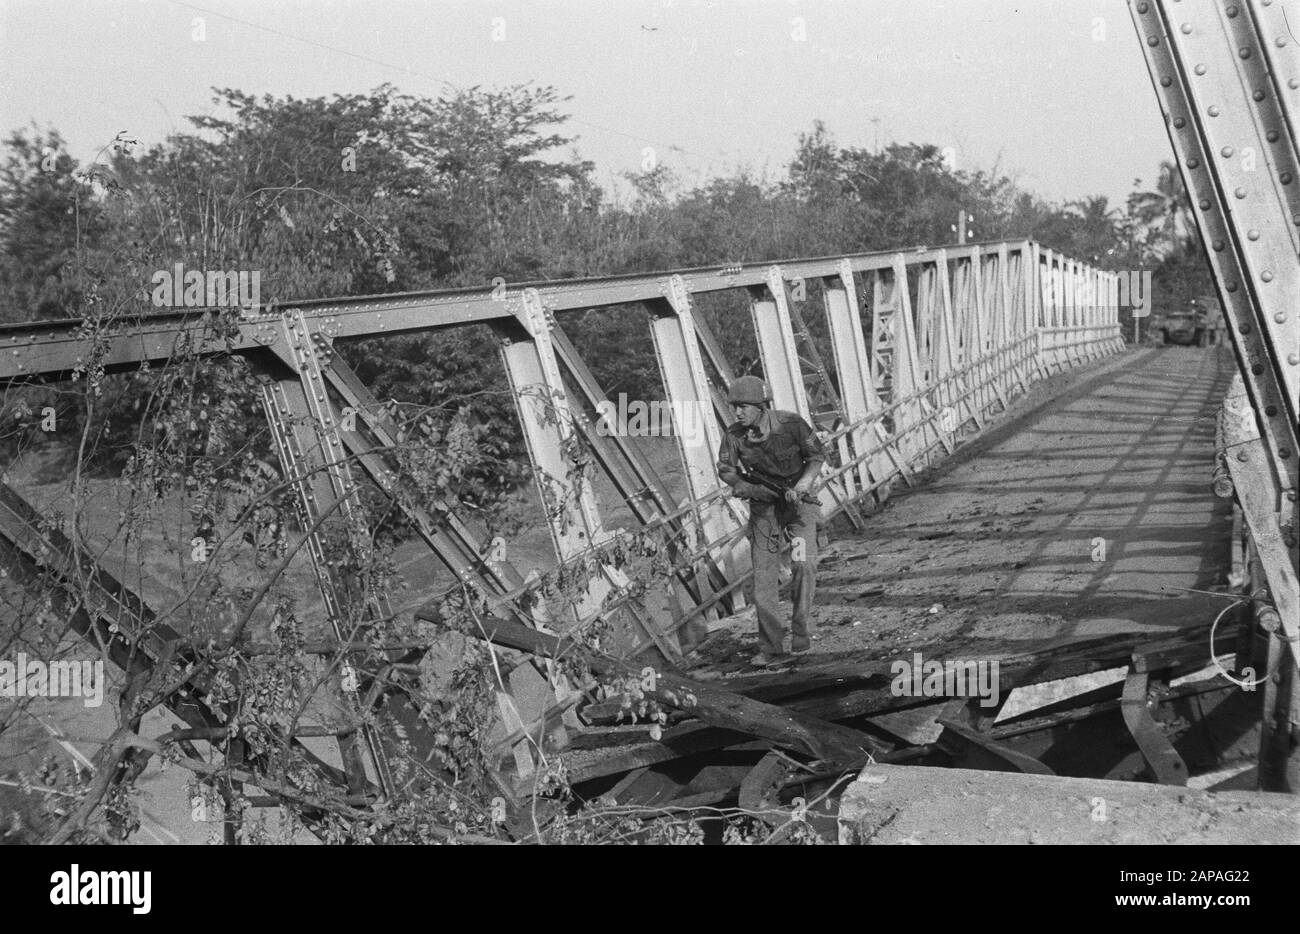 Tegal Beschreibung: Die Brücke in Lobongkok wurde zerstört, vorsichtig untersucht die Situation Datum: Juli 1947 Ort: Indonesien, Java, Lobongkok, Niederländisch-Indien Stockfoto